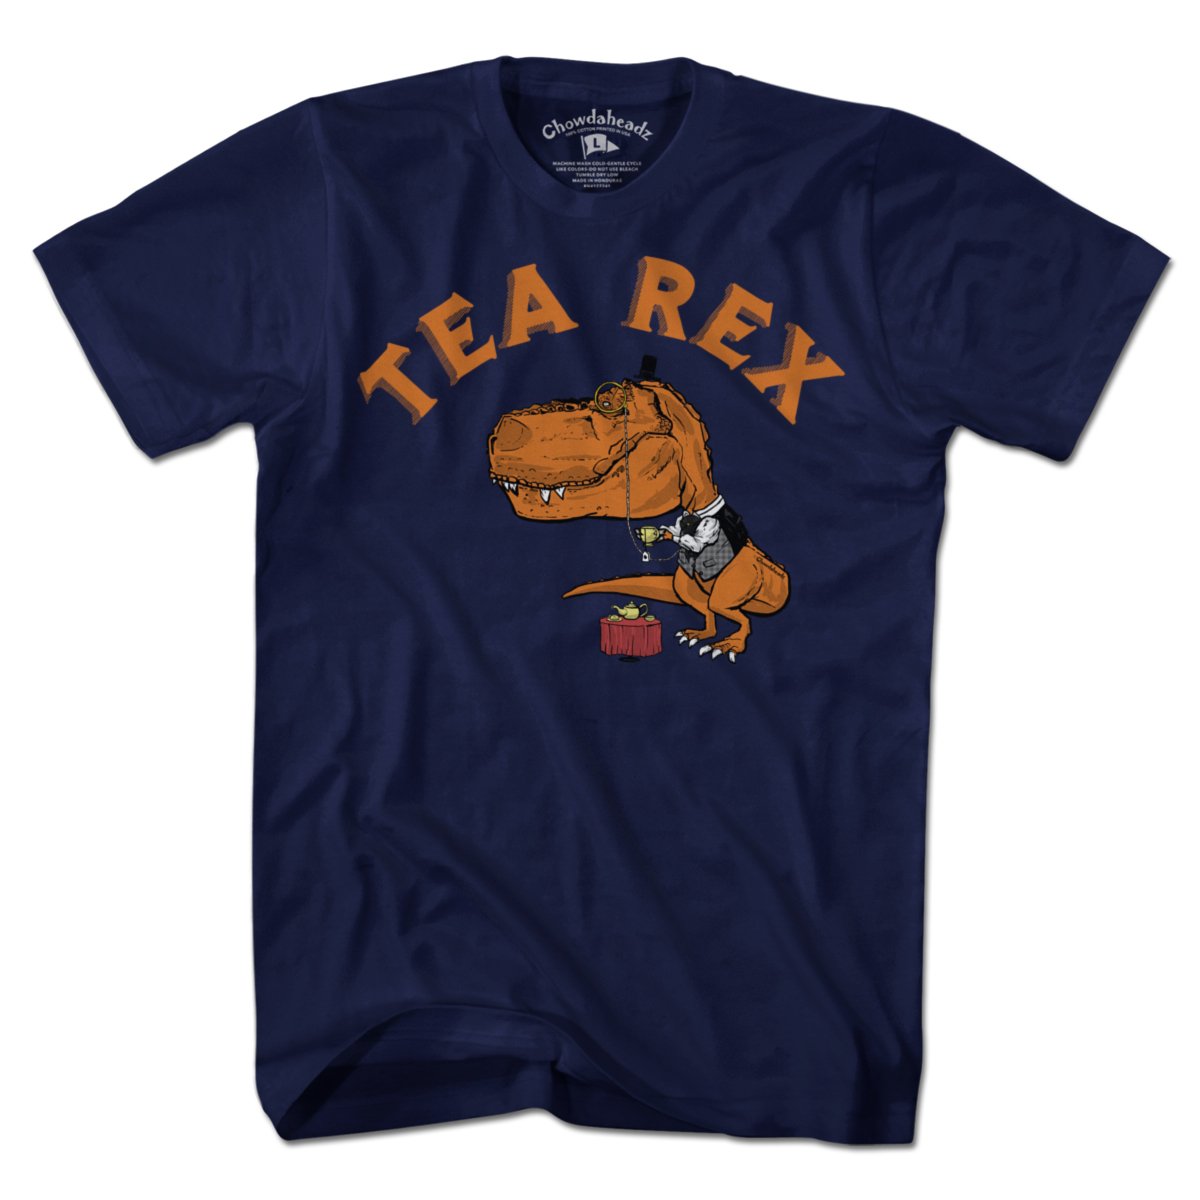 Tea Rex T-Shirt - Chowdaheadz